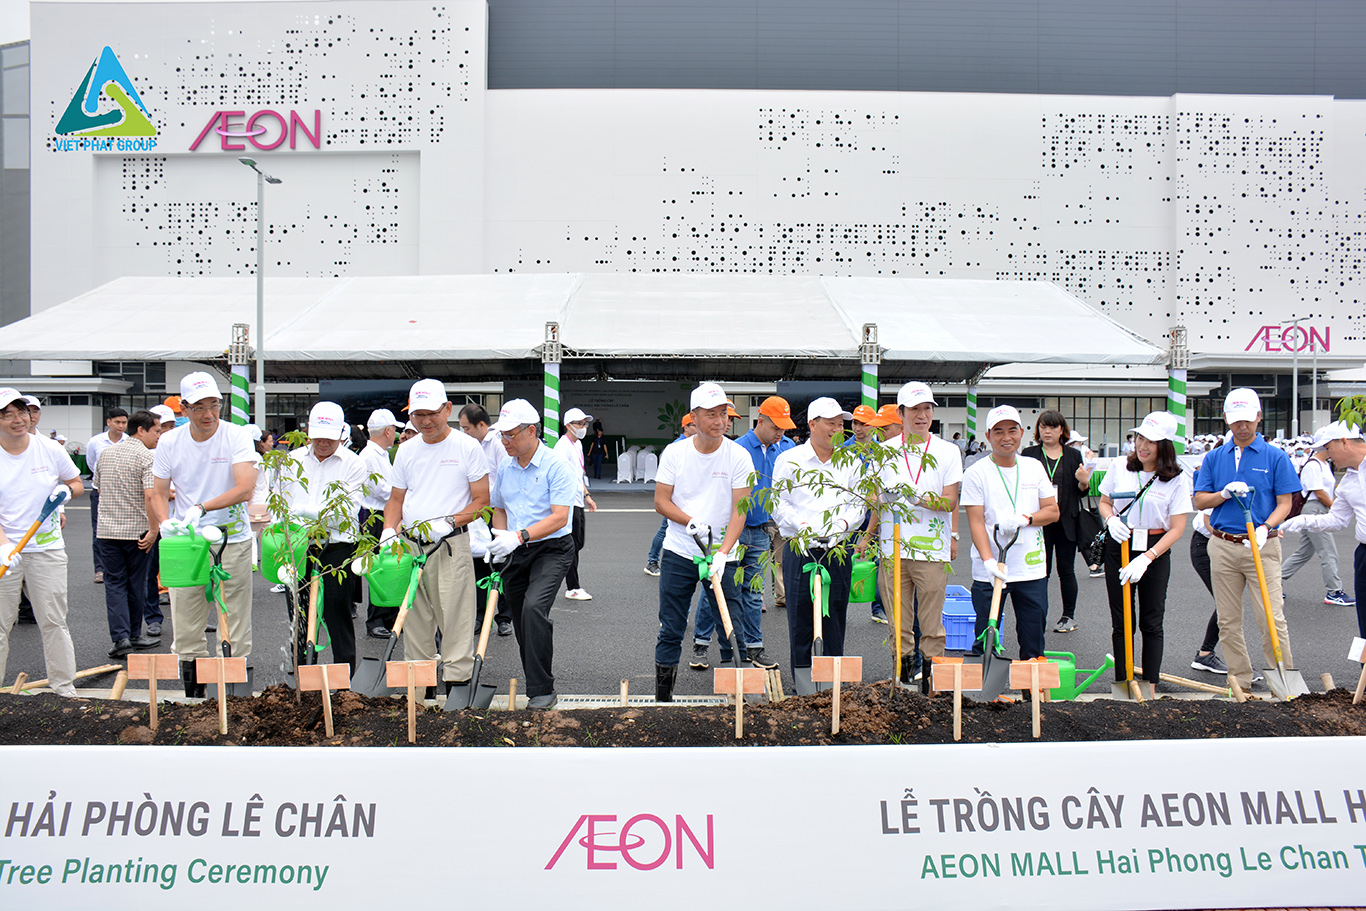 Lễ trồng cây Aeon Mall Hải Phòng Lê Chân